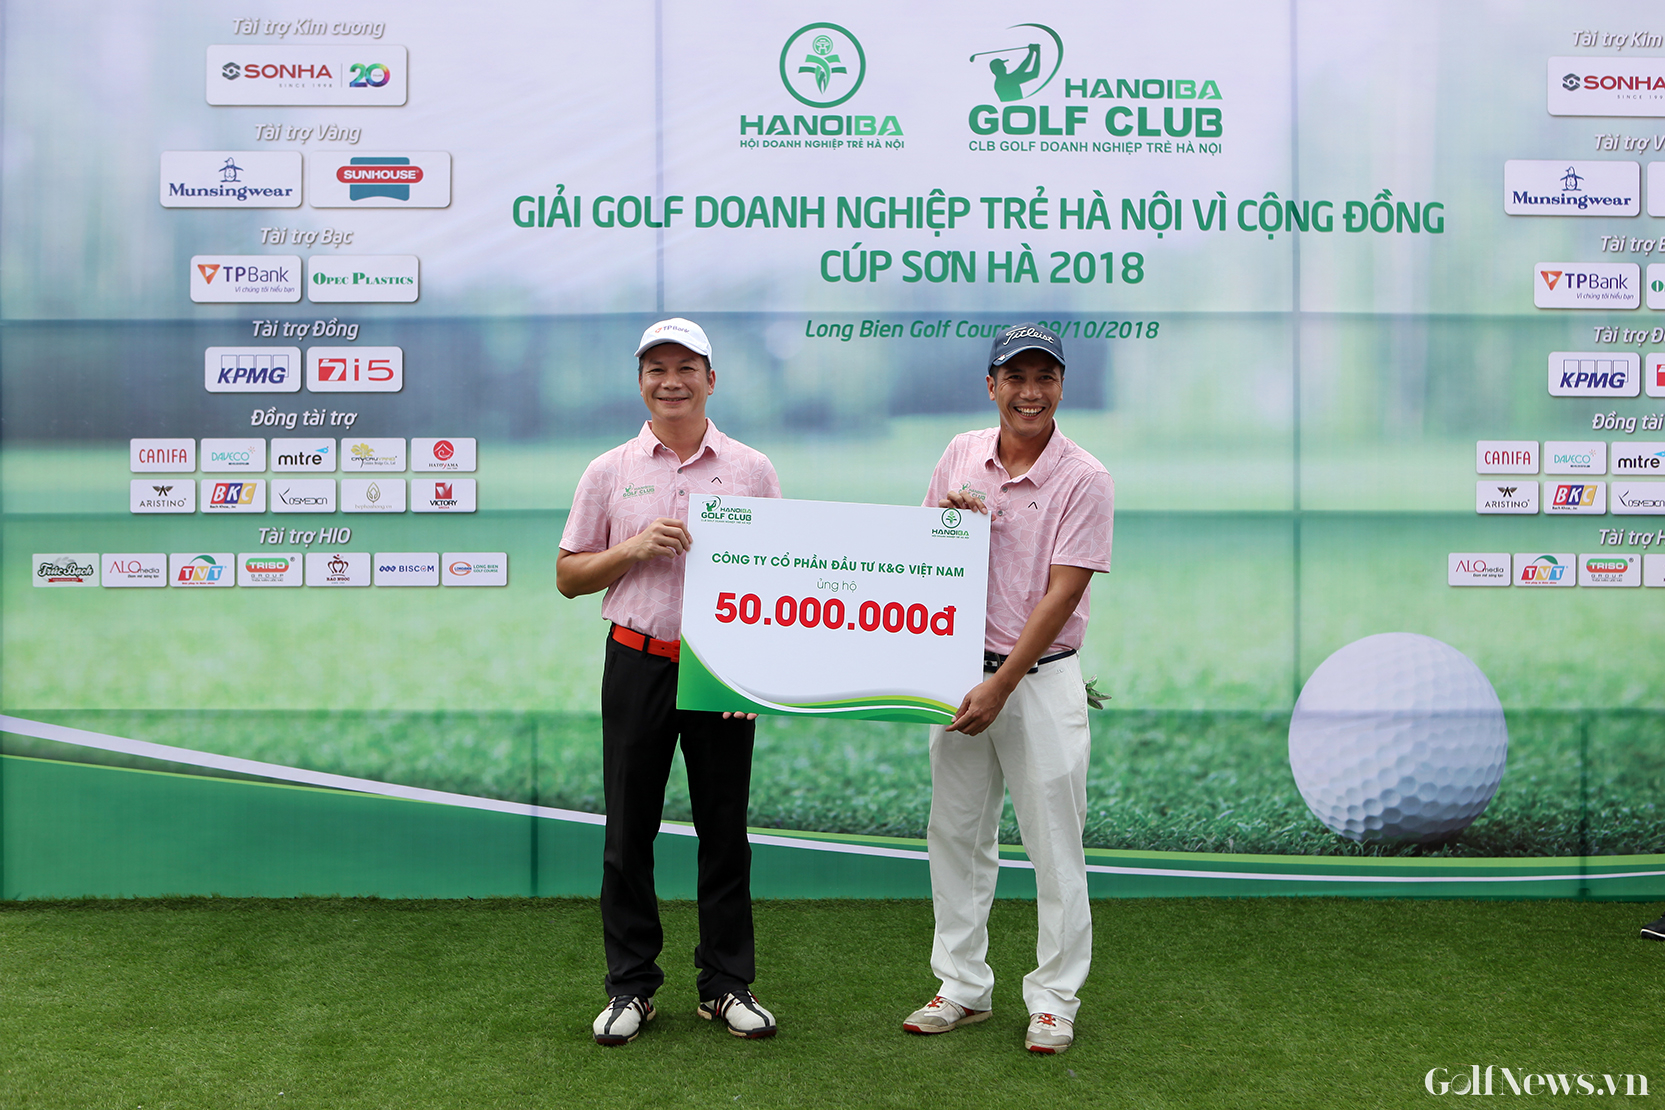 Giải Golf Doanh nghiệp trẻ Hà Nội vì Cộng đồng - Cúp SƠN HÀ 2019 gây quỹ xây trường cho trẻ em nghèo